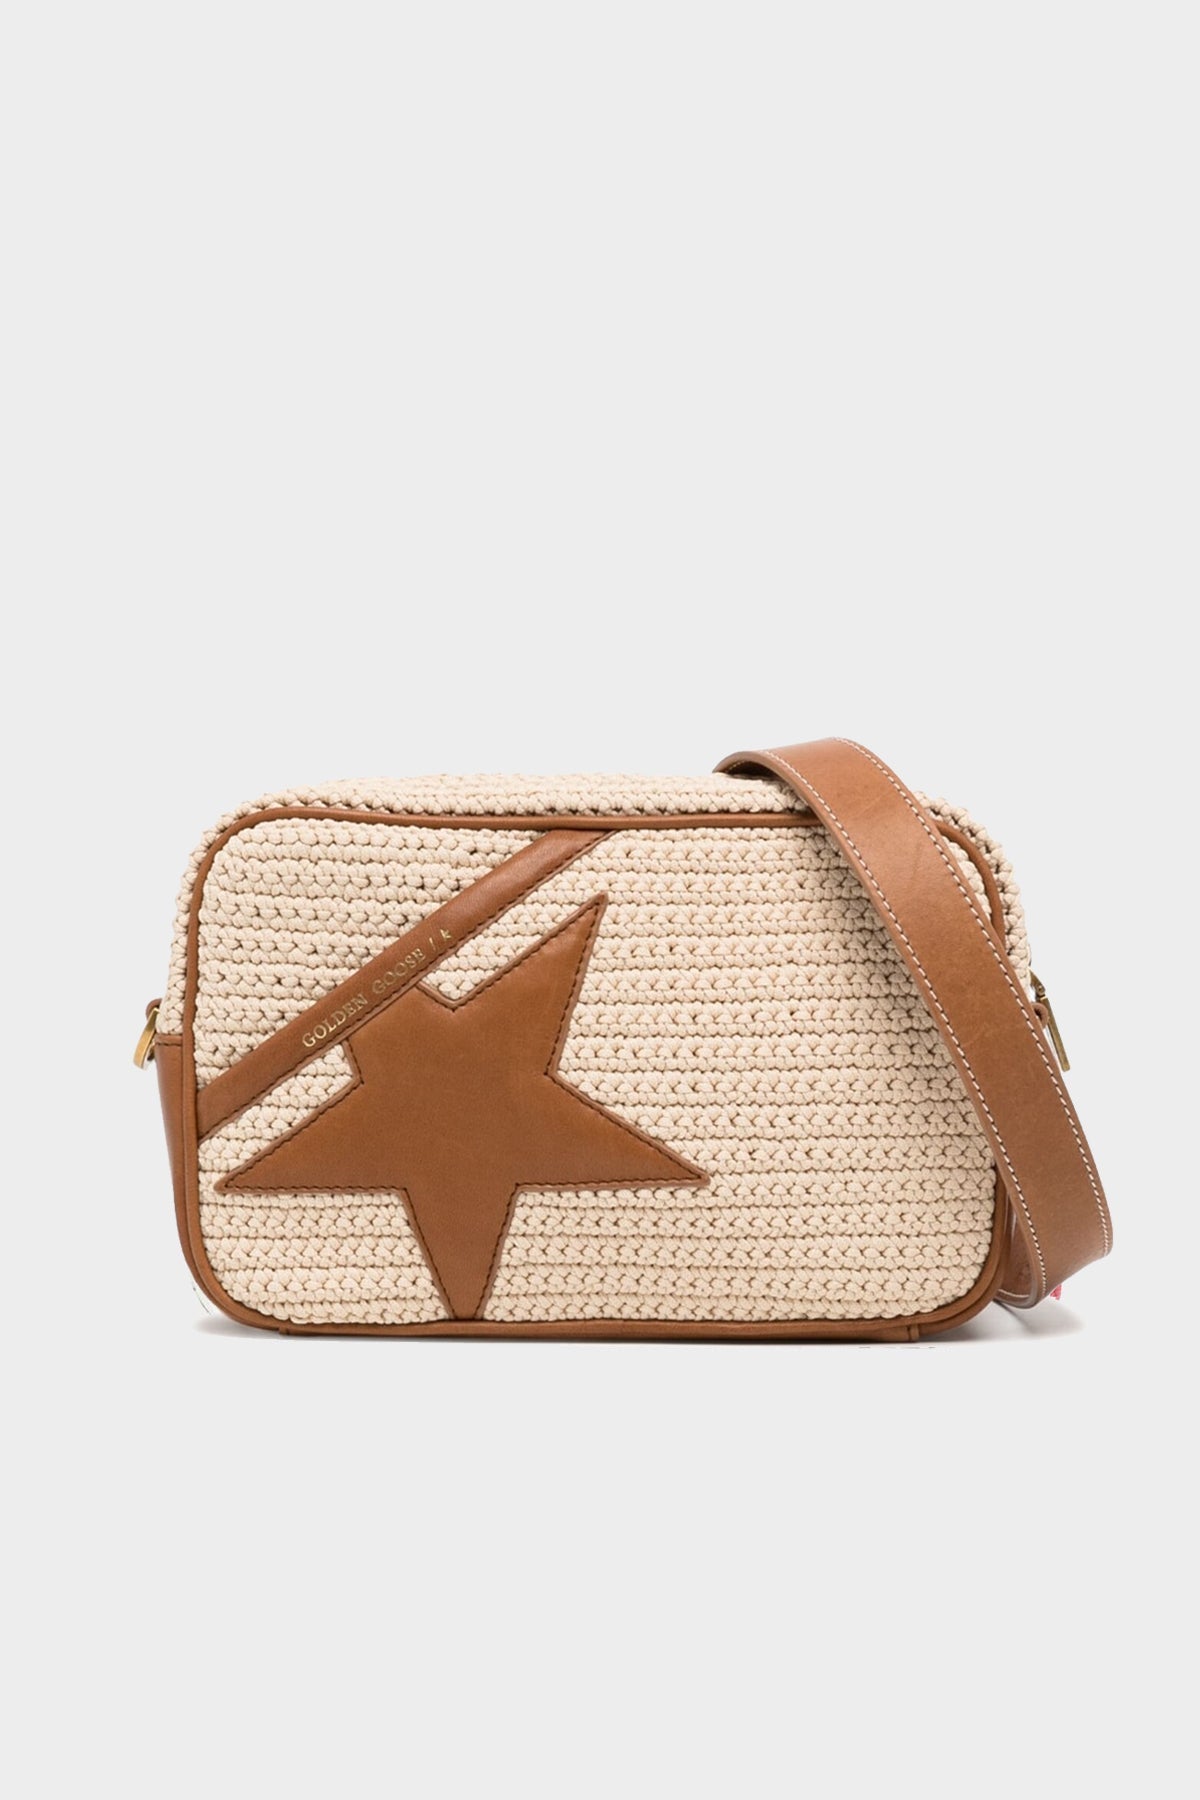 Star-Bag Crochet Body and Leather Shoulder Bag in Brown - shop-olivia.com